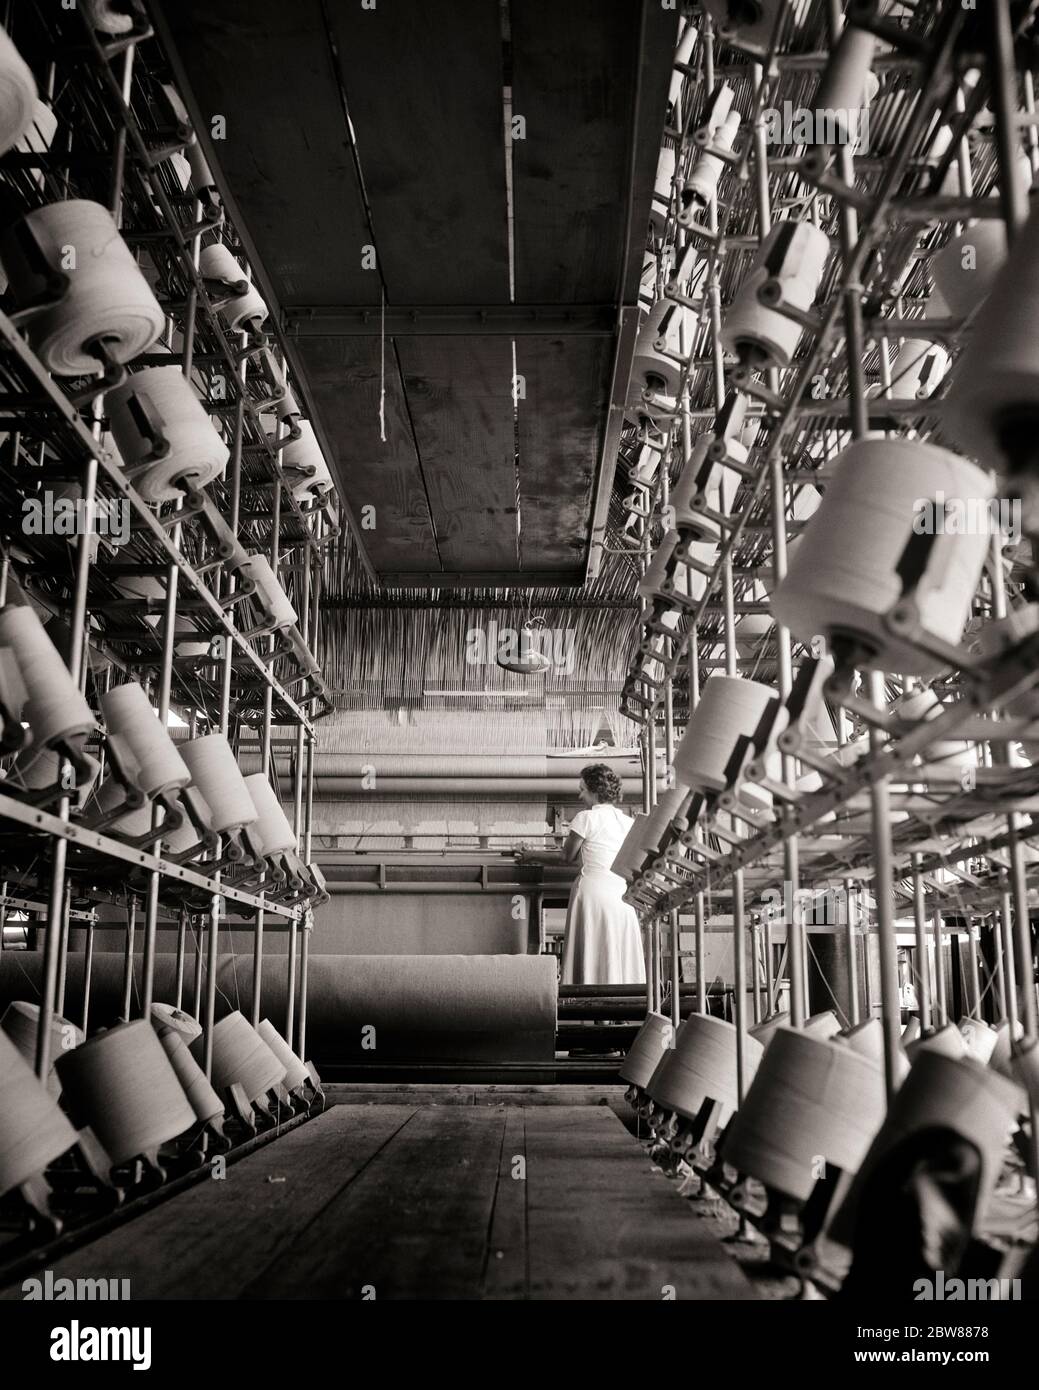 Maquinaria de tejer Imágenes de stock en blanco y negro - Alamy